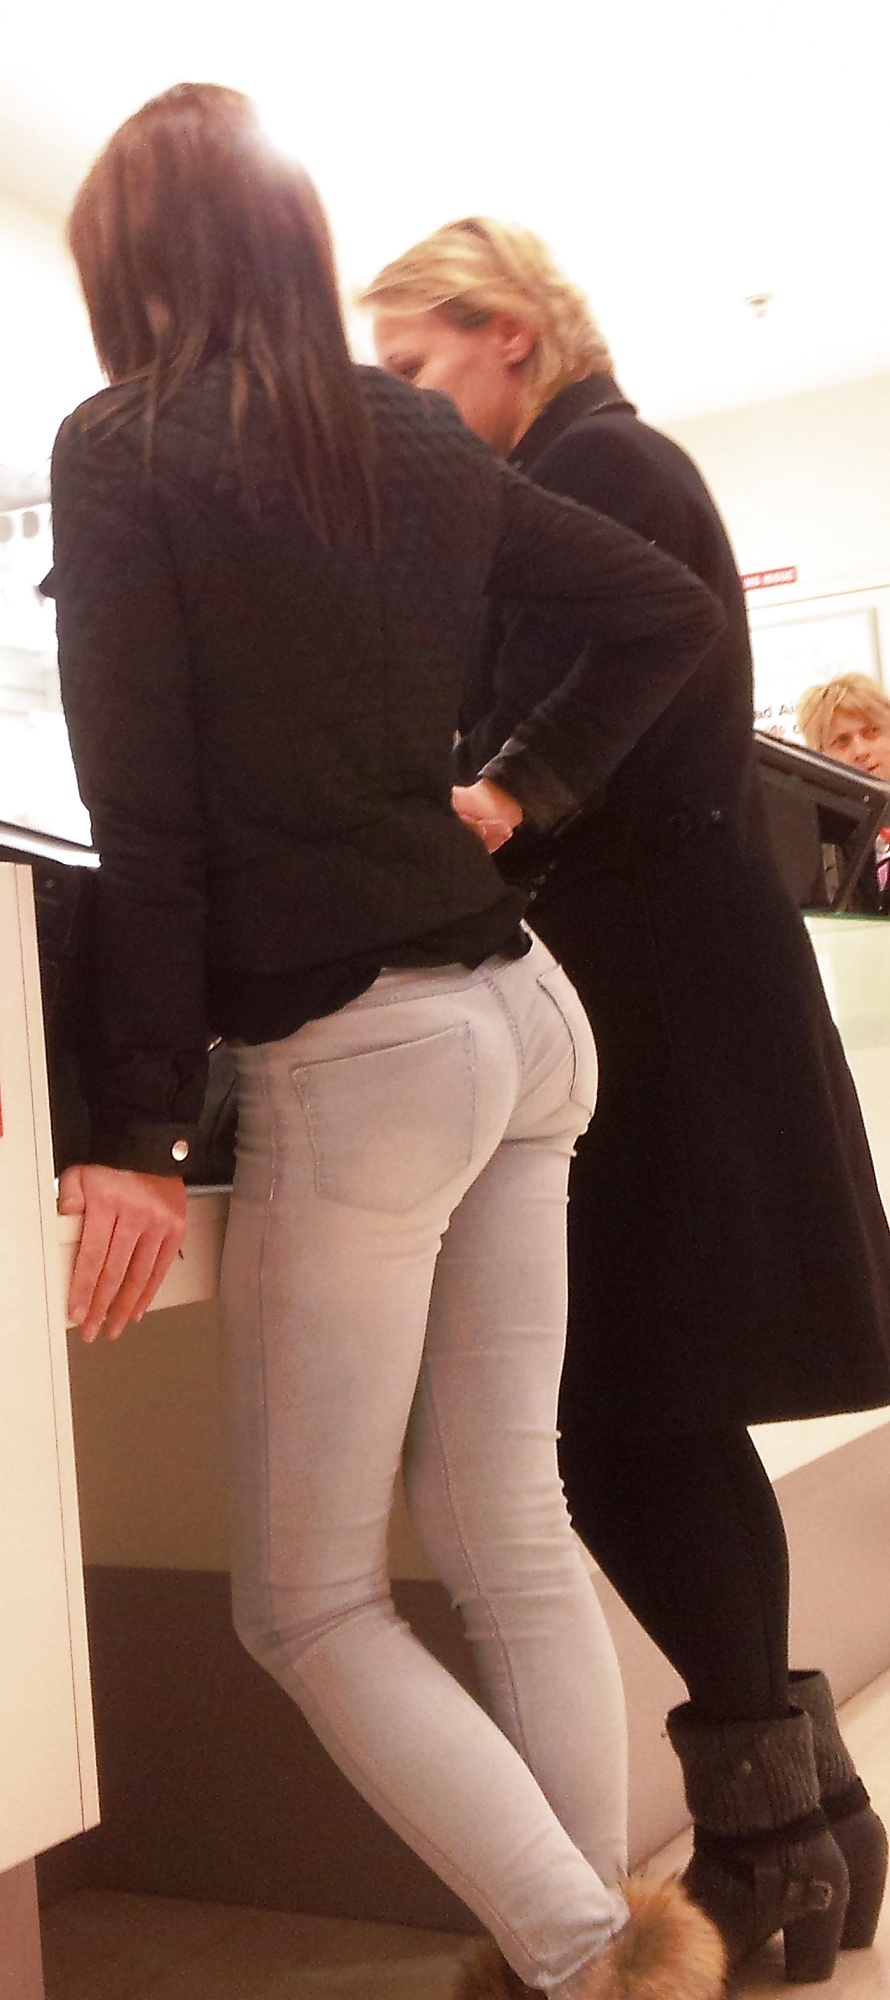 Joli ptit cul dans les magasins - Tight ass in jeans #34031223